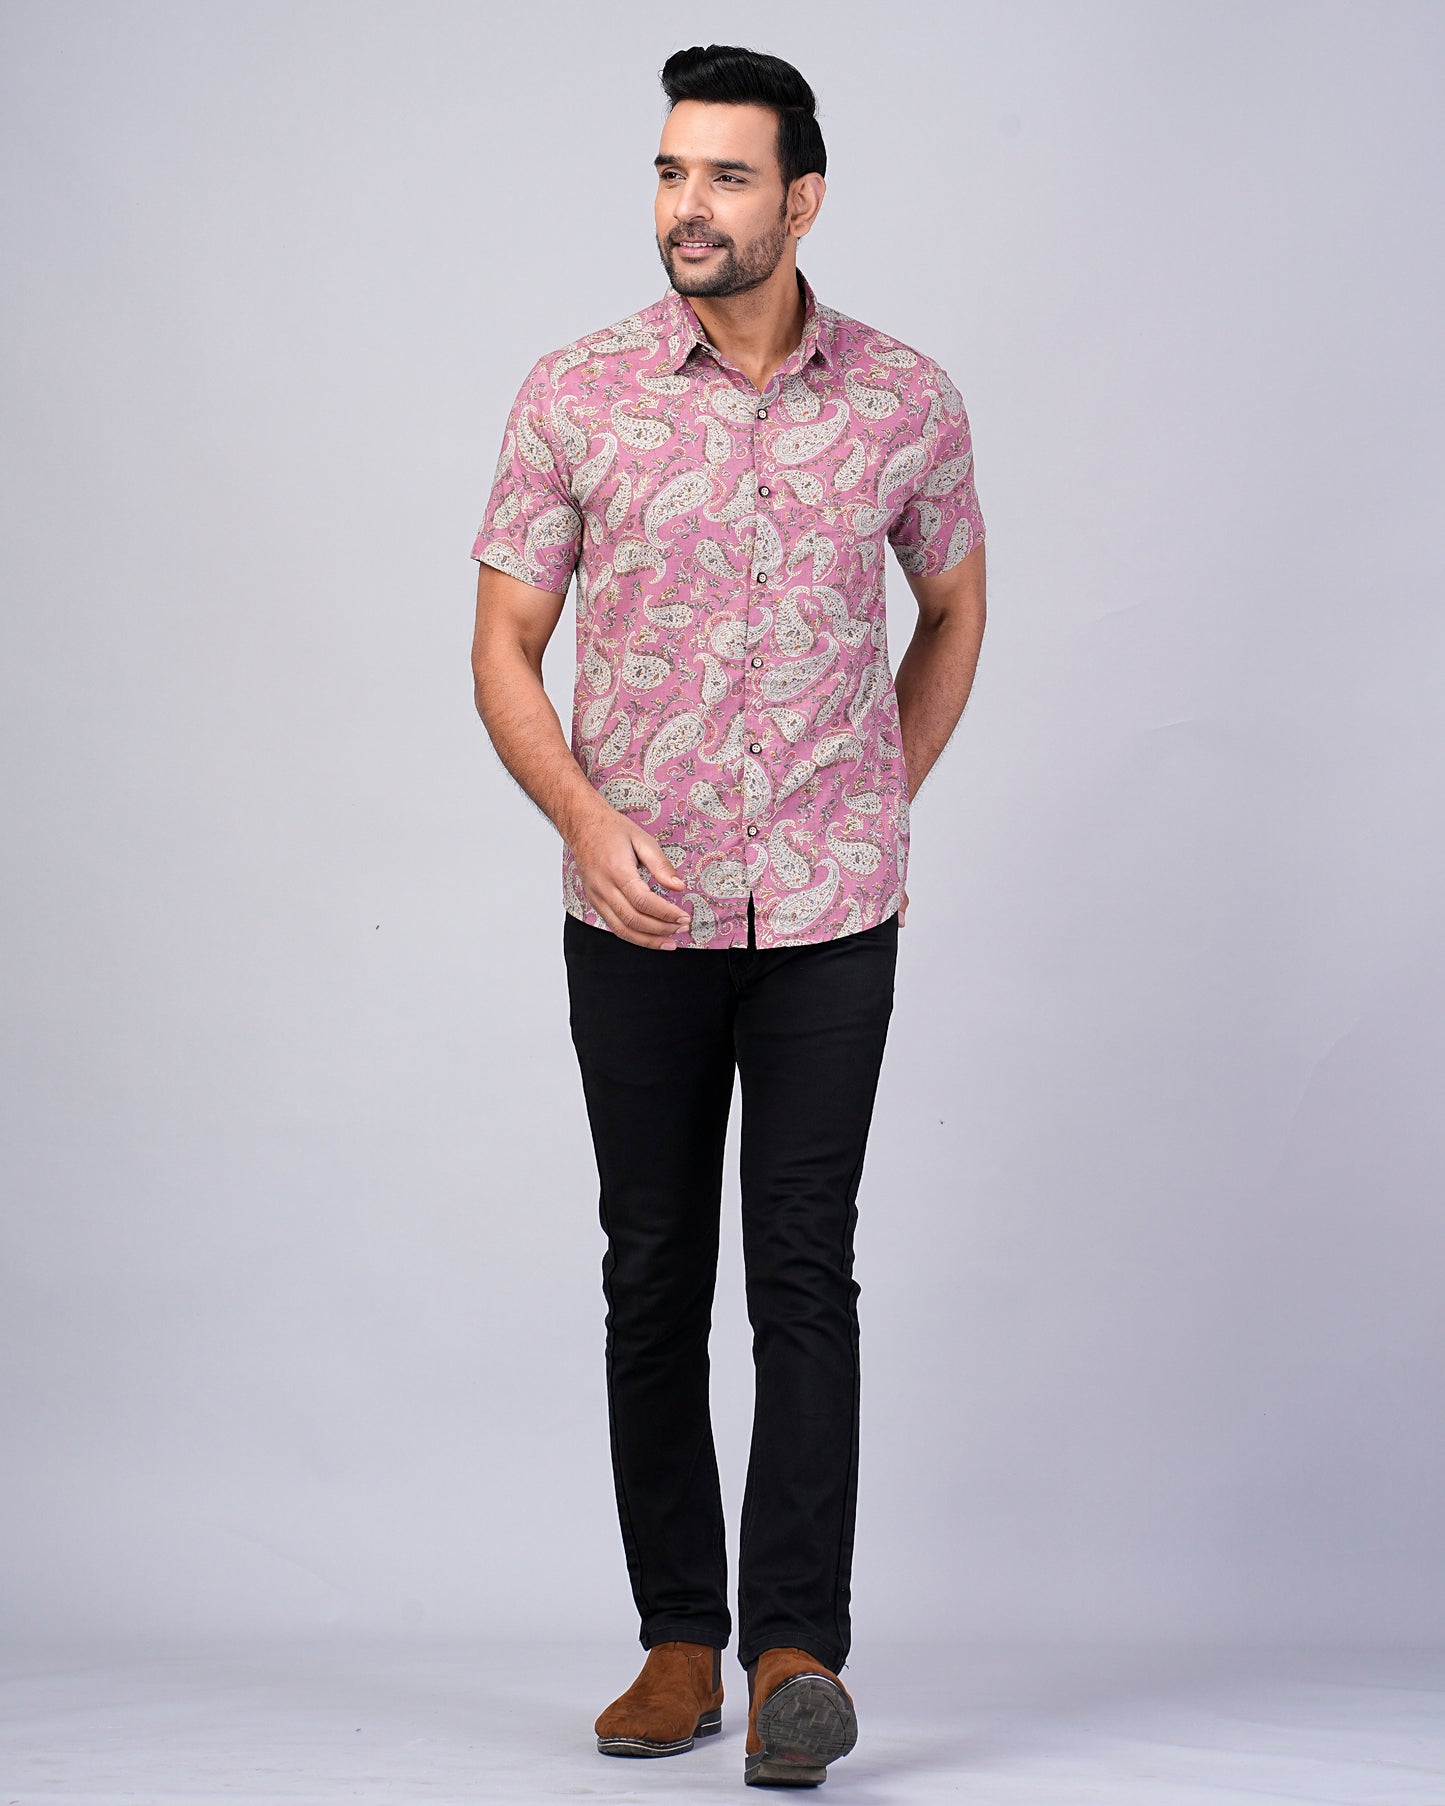 Men's Pink Paisley Printed Half-Sleeves shirts